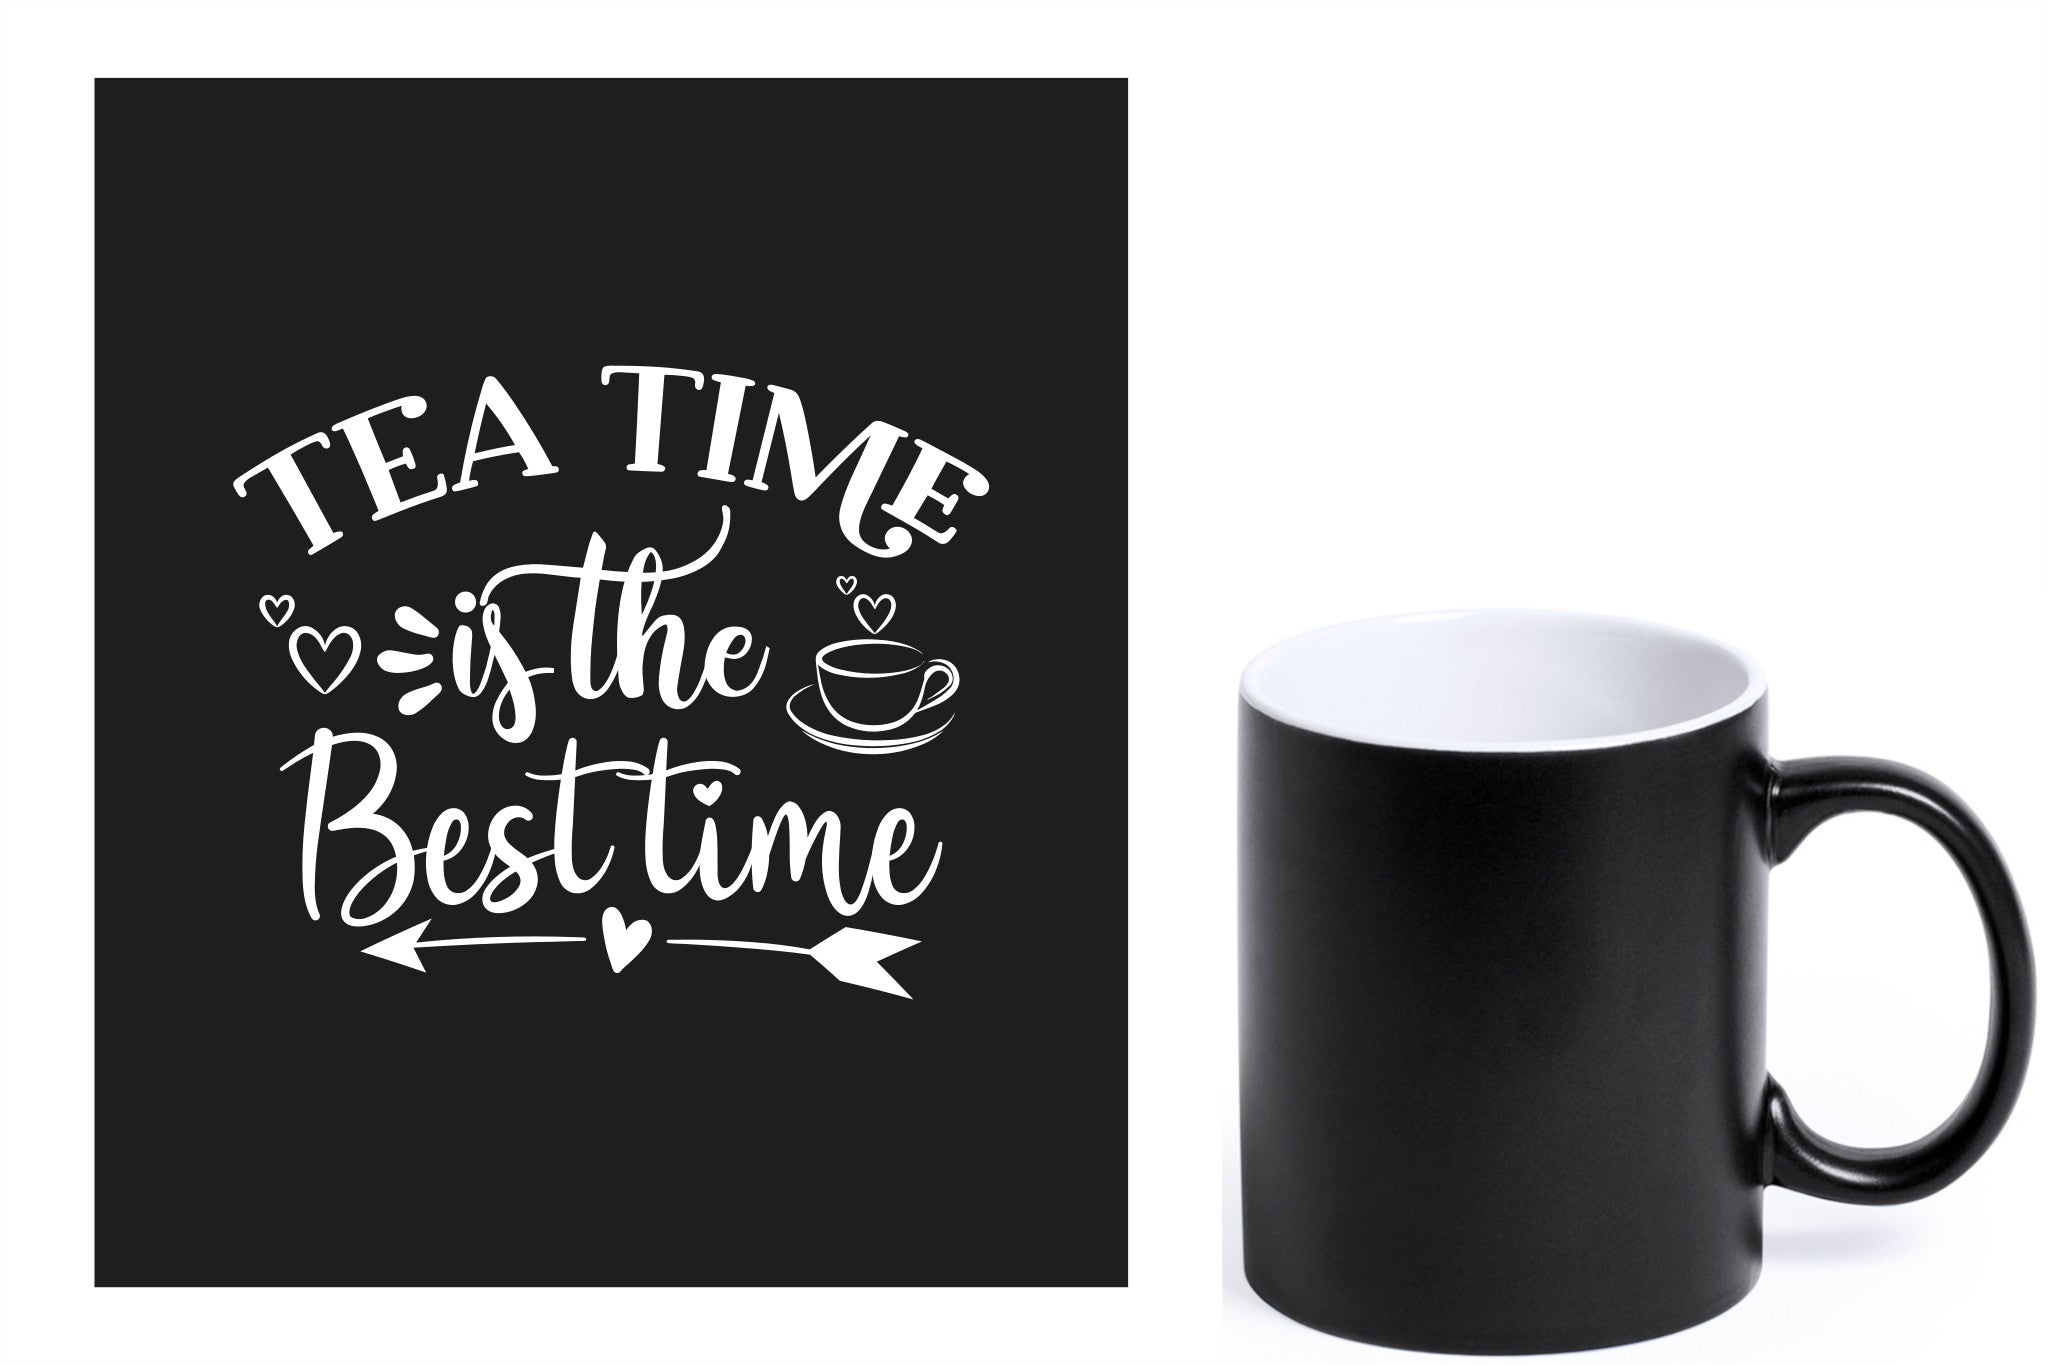 zwarte keramische mok met witte gravure  'Tea time is the best time'.